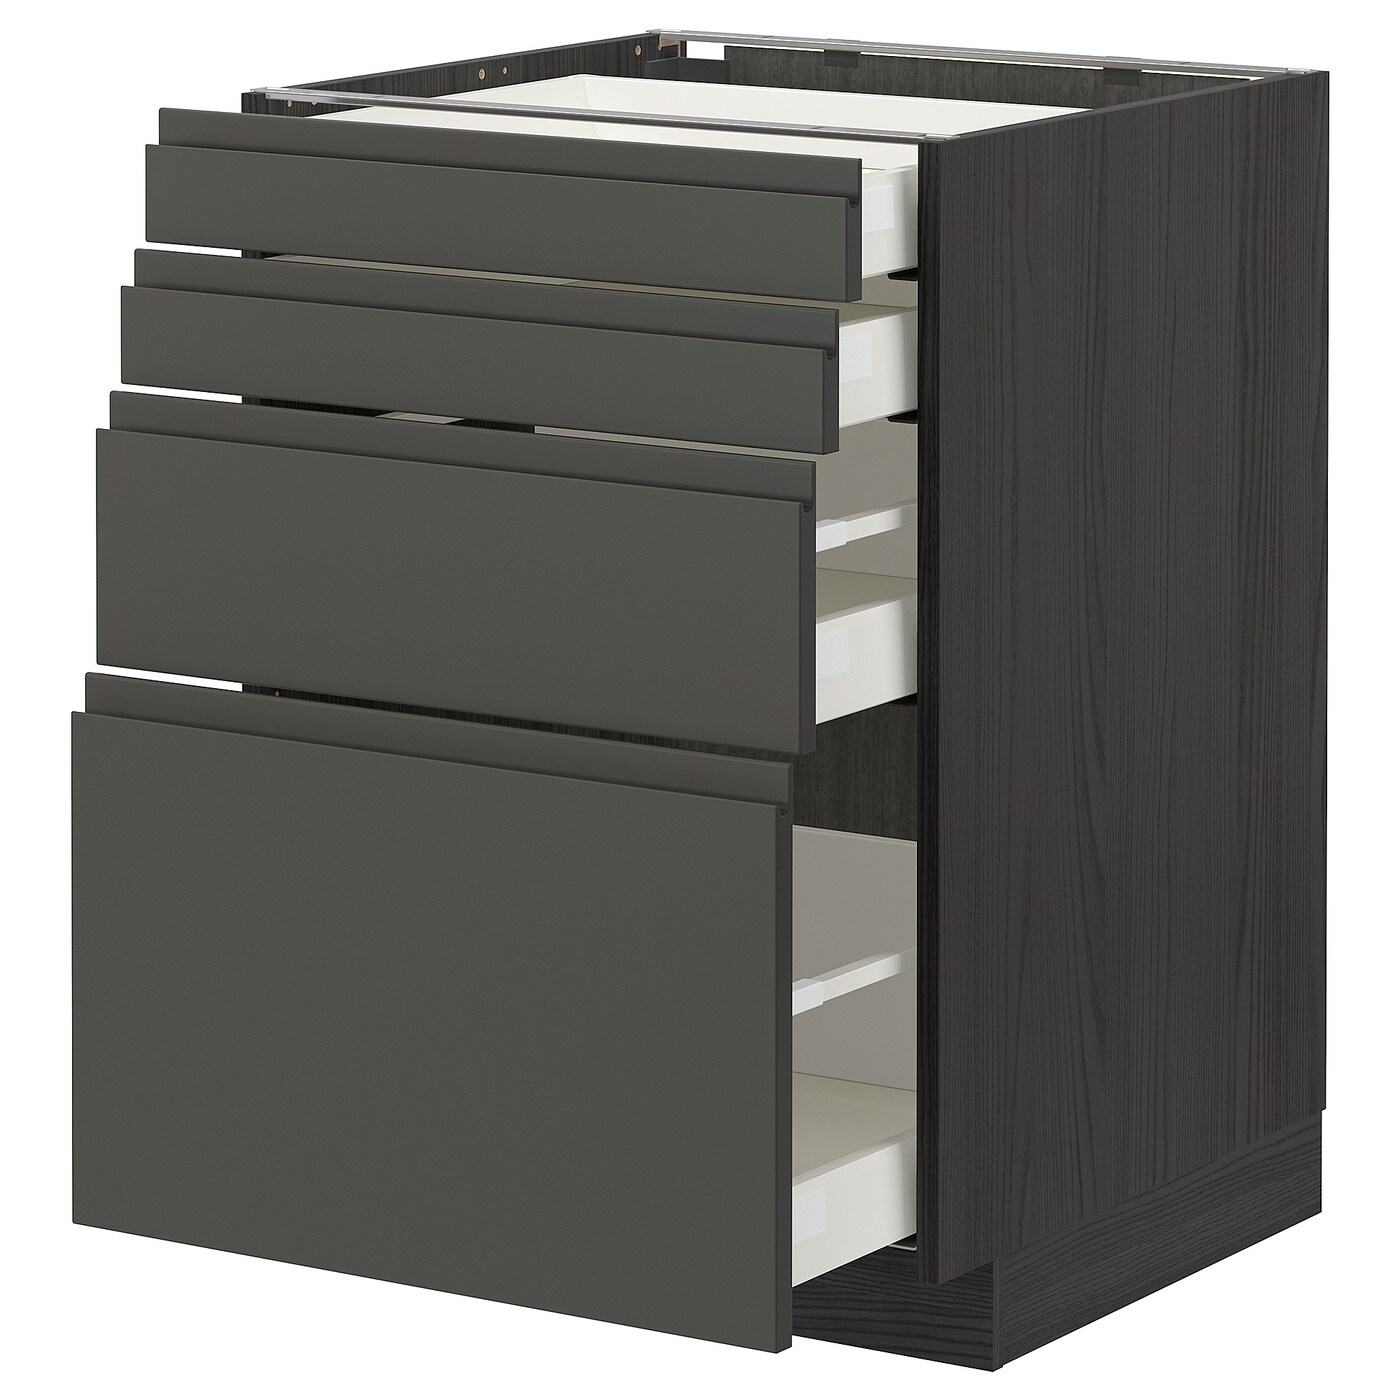 Напольный кухонный шкаф  - IKEA METOD MAXIMERA, 88x61,9x60см, черный/серый, МЕТОД МАКСИМЕРА ИКЕА